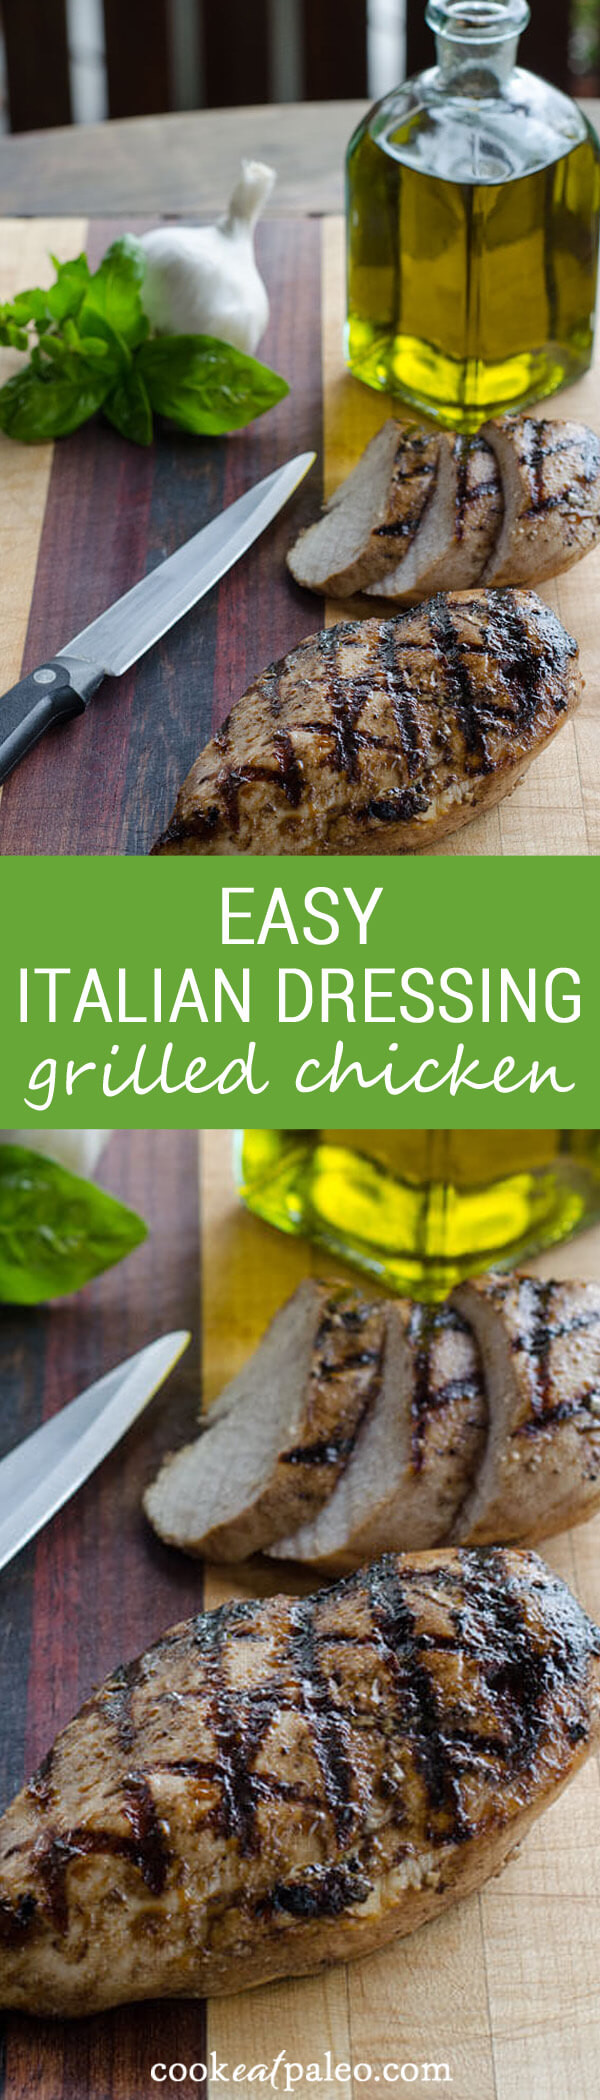 Italian Dressing Chicken Recipes
 Easy Italian Dressing Grilled Chicken